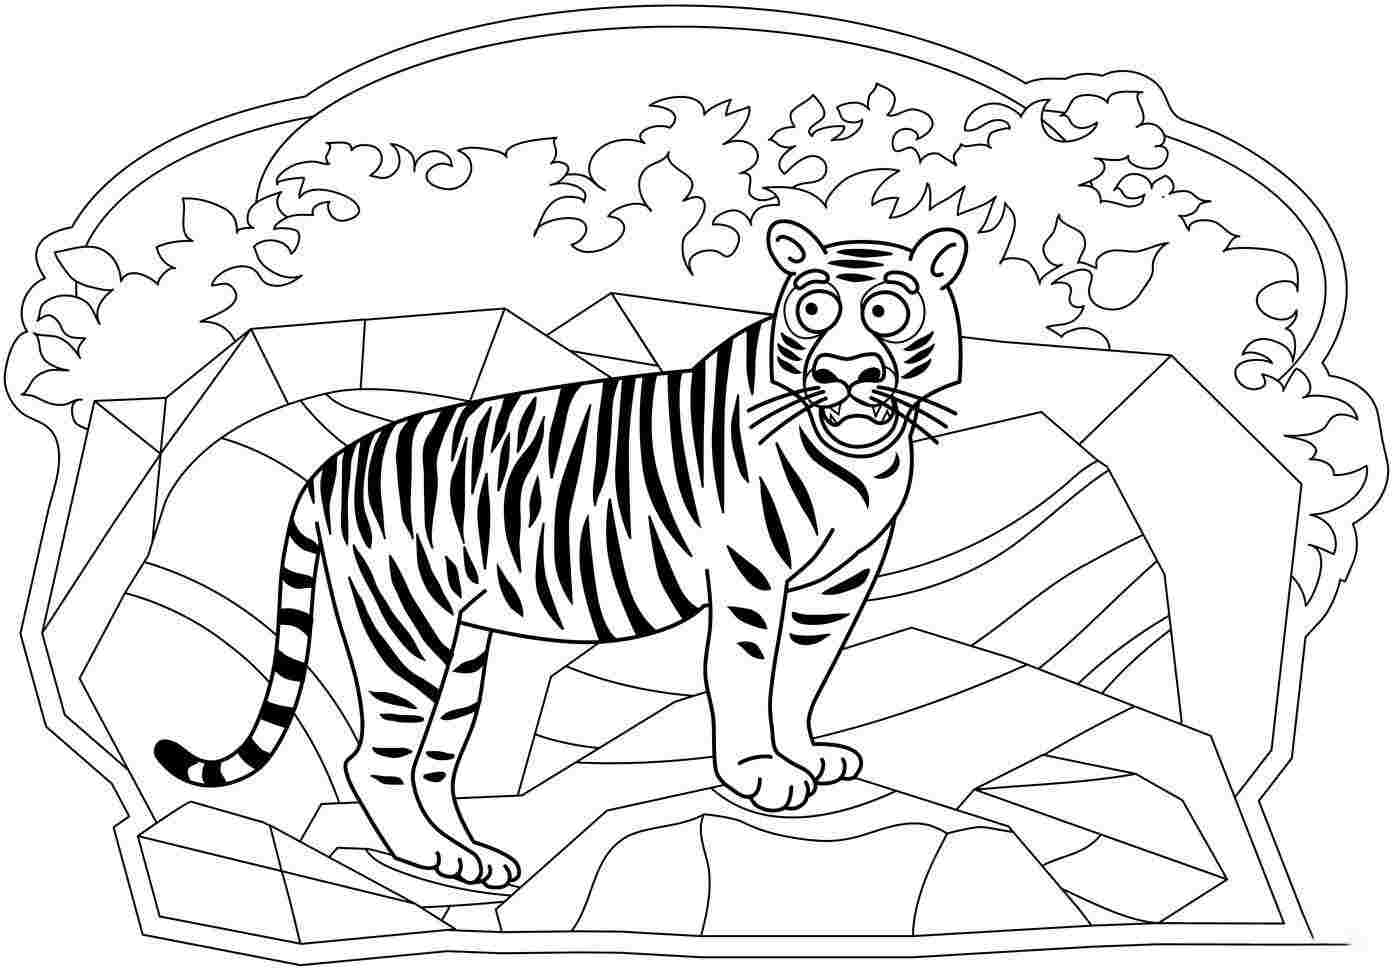 La mirada sorprendida del tigre en el acantilado de Tiger